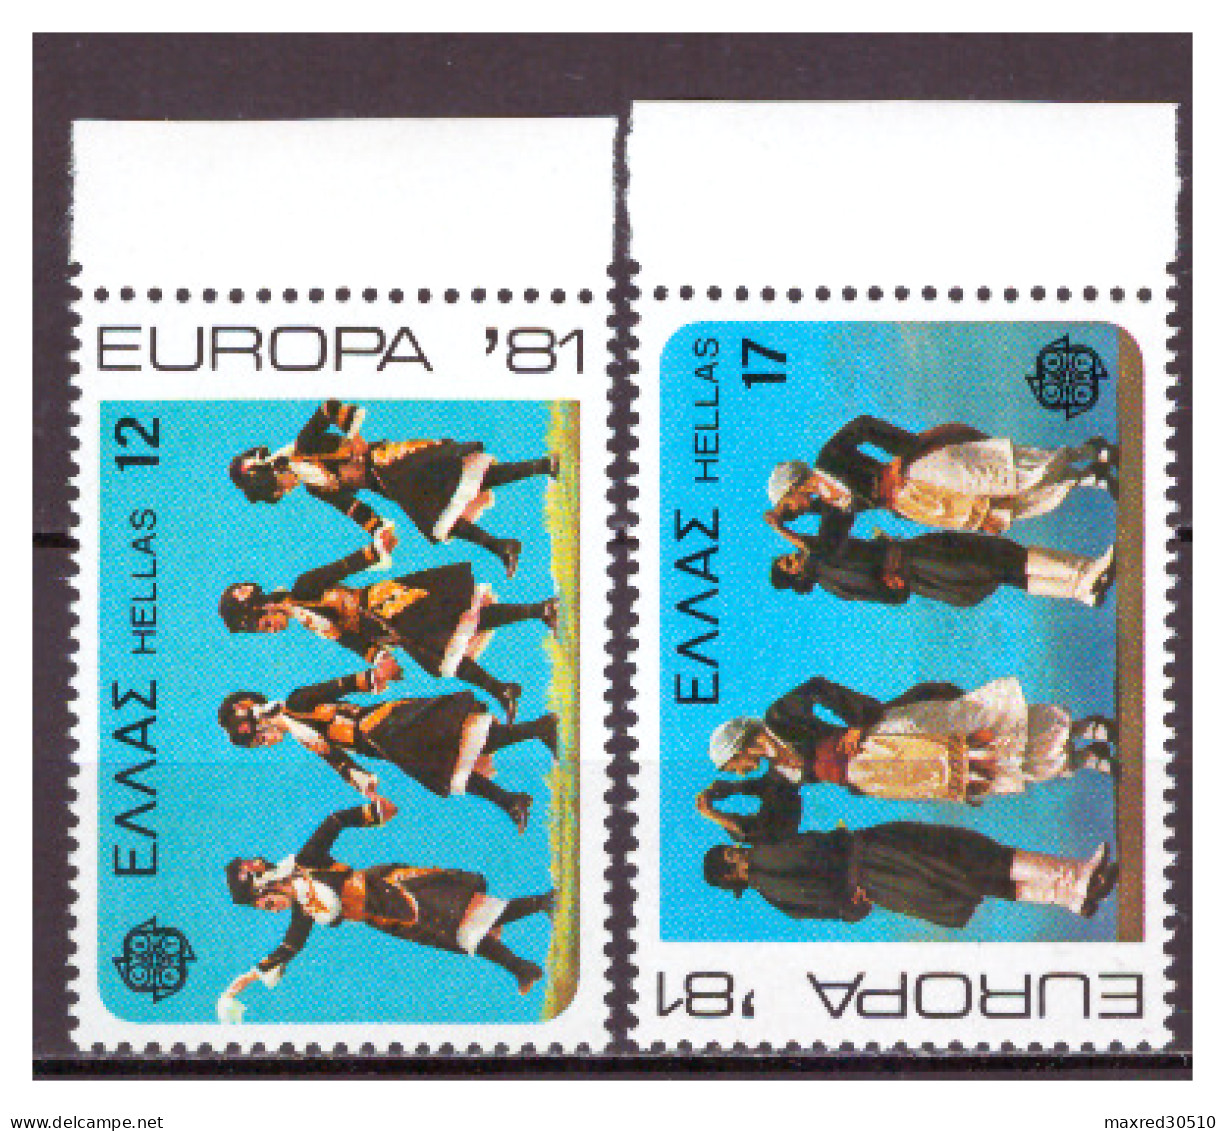 GREECE 1981 SET "EUROPA CEPT 1981 - TRADITIONAL DANCES" MNH  V-F - Nuevos